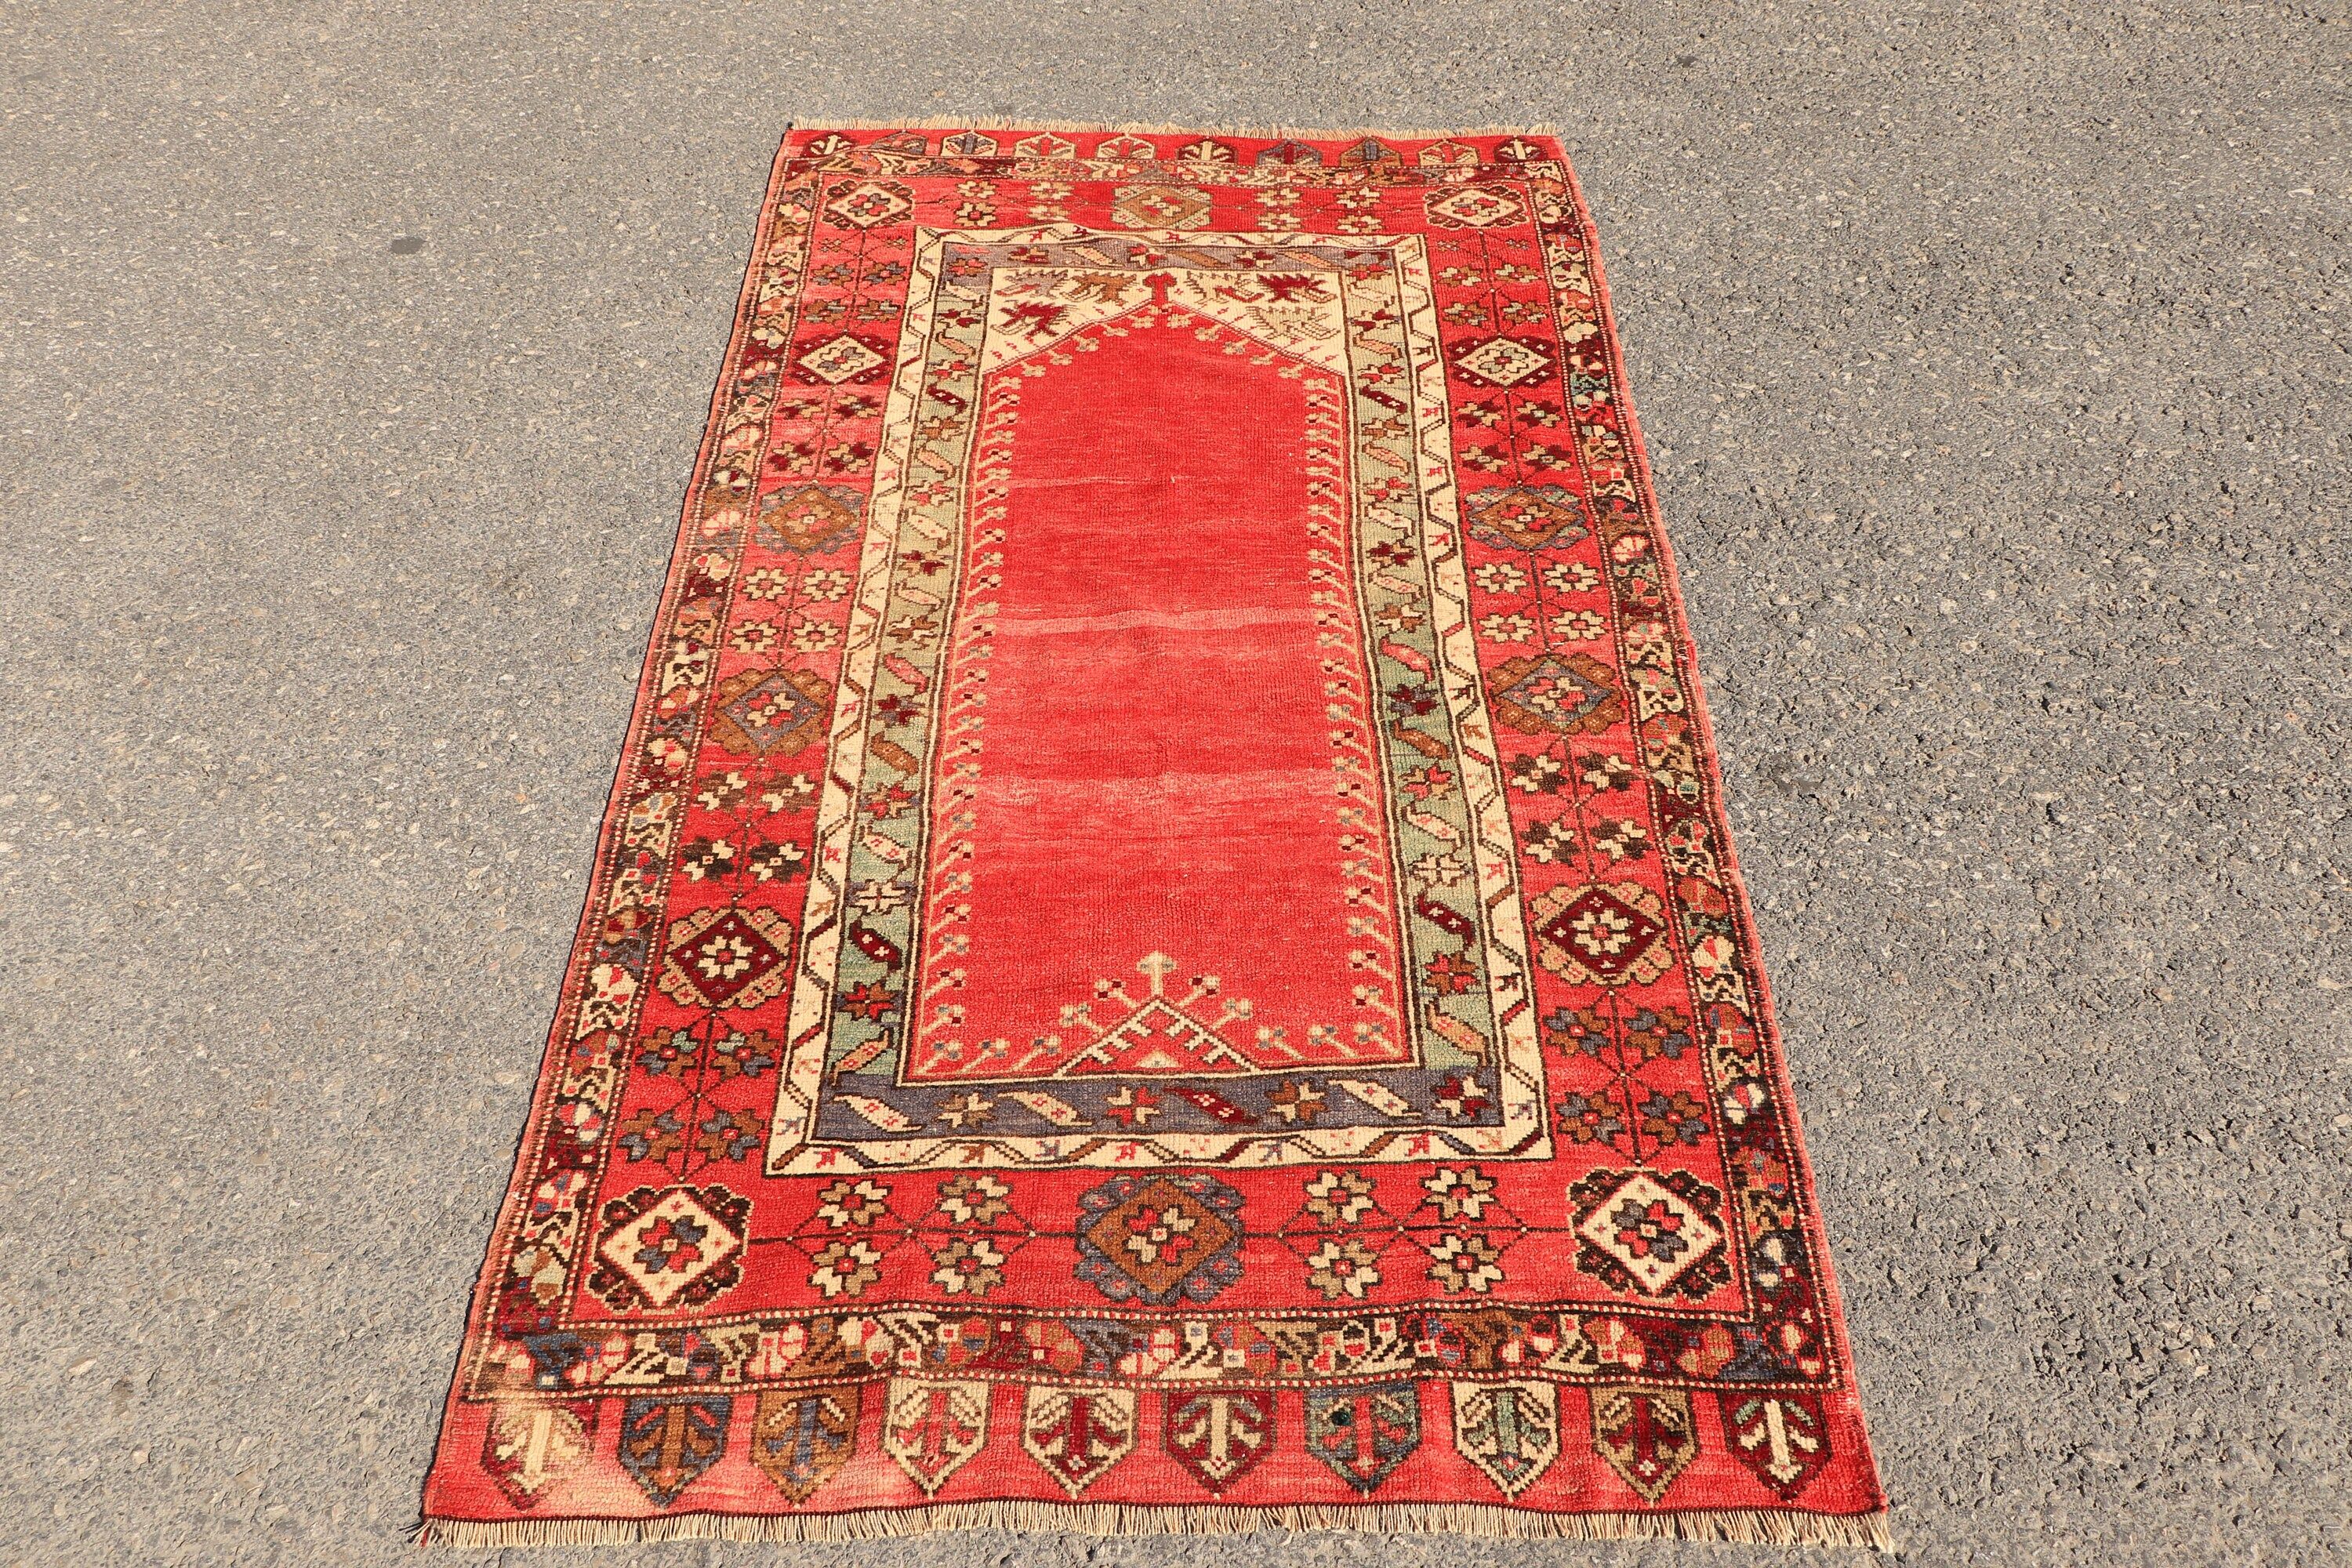 Floor Rugs, Red Moroccan Rug, Vintage Rug, Nursery Rug, Rugs for Bedroom, Turkish Rugs, Abstract Rug, 3.6x6.4 ft Accent Rug, Bedroom Rugs